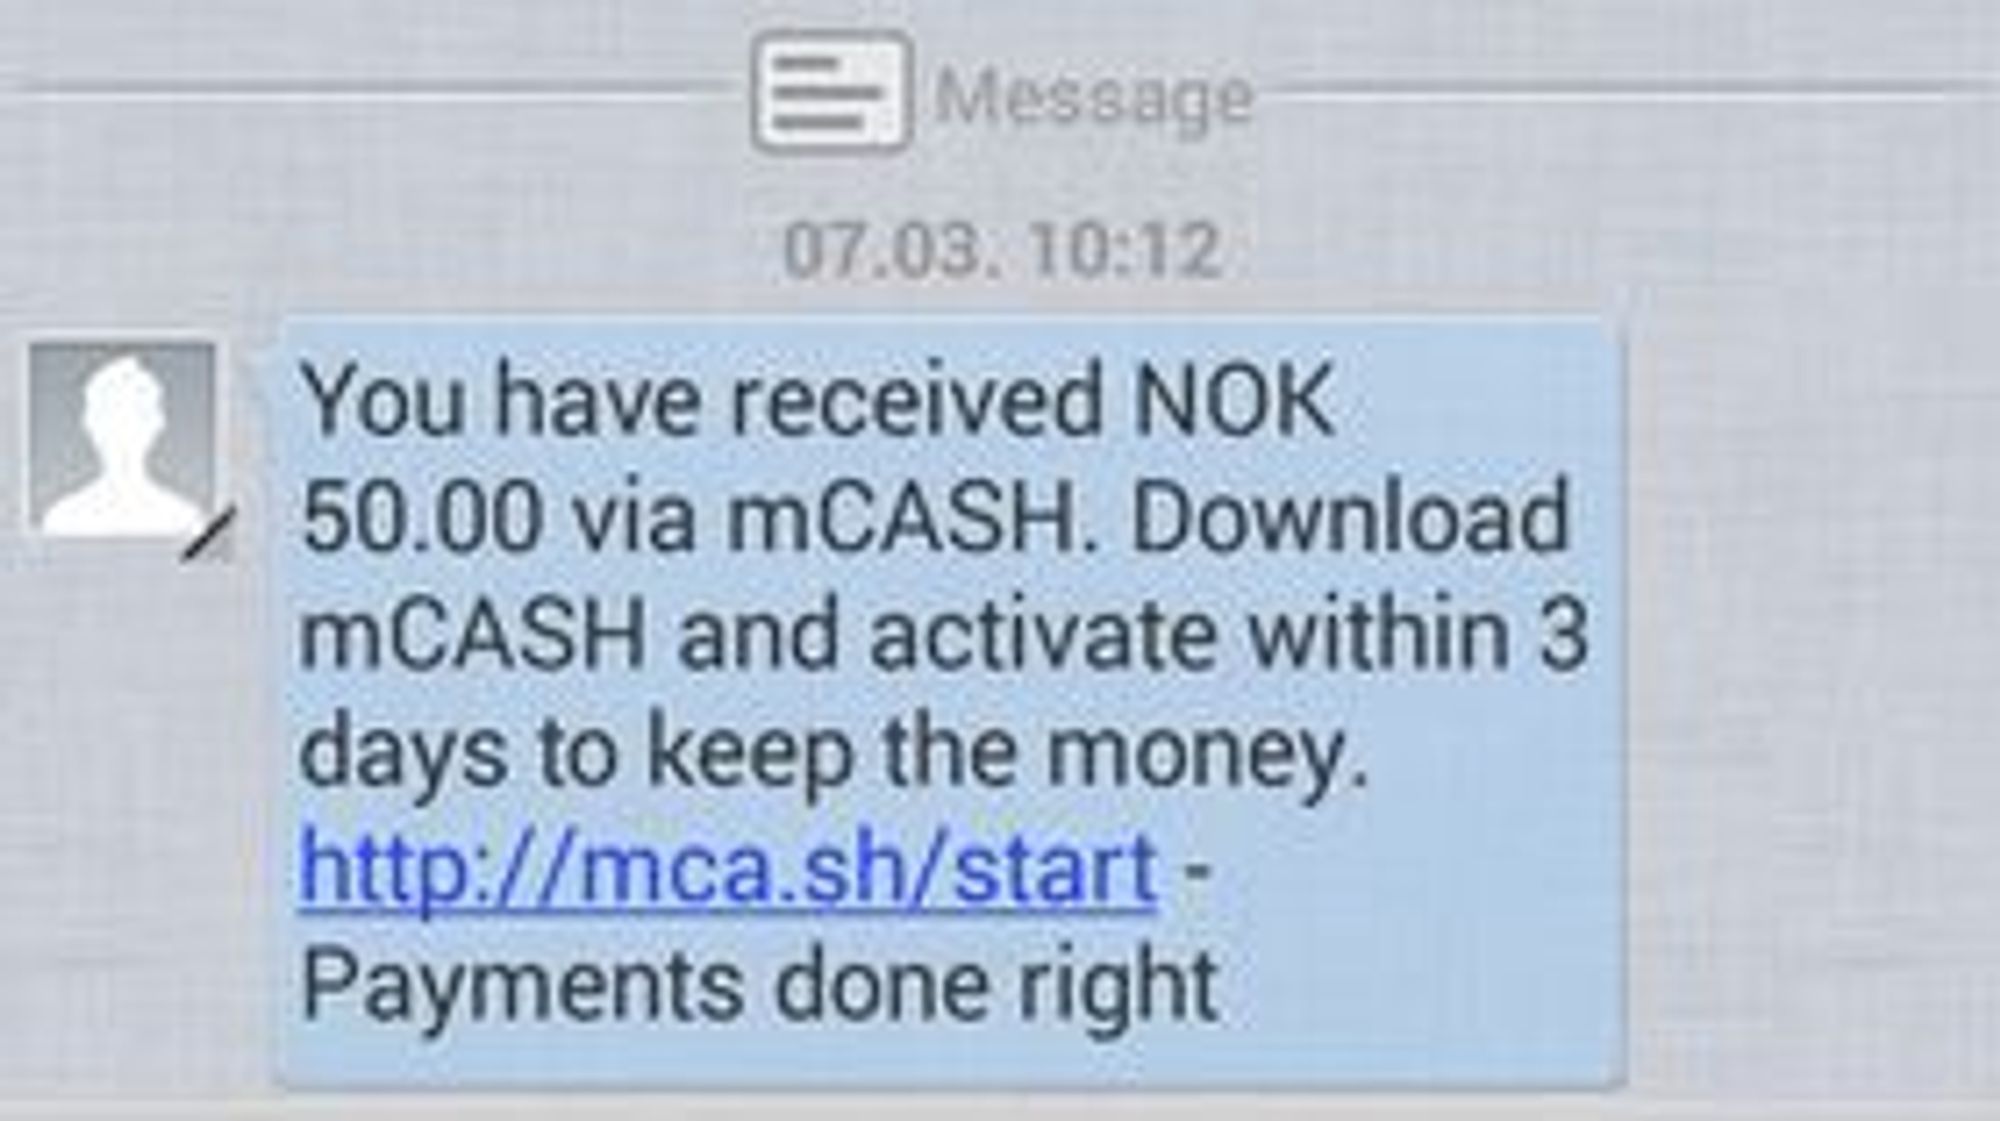 Mobilbrukere som ikke har mCash-appen installert vil få en slik SMS med beskjed om en betaling og med en lenke til mer informasjon.